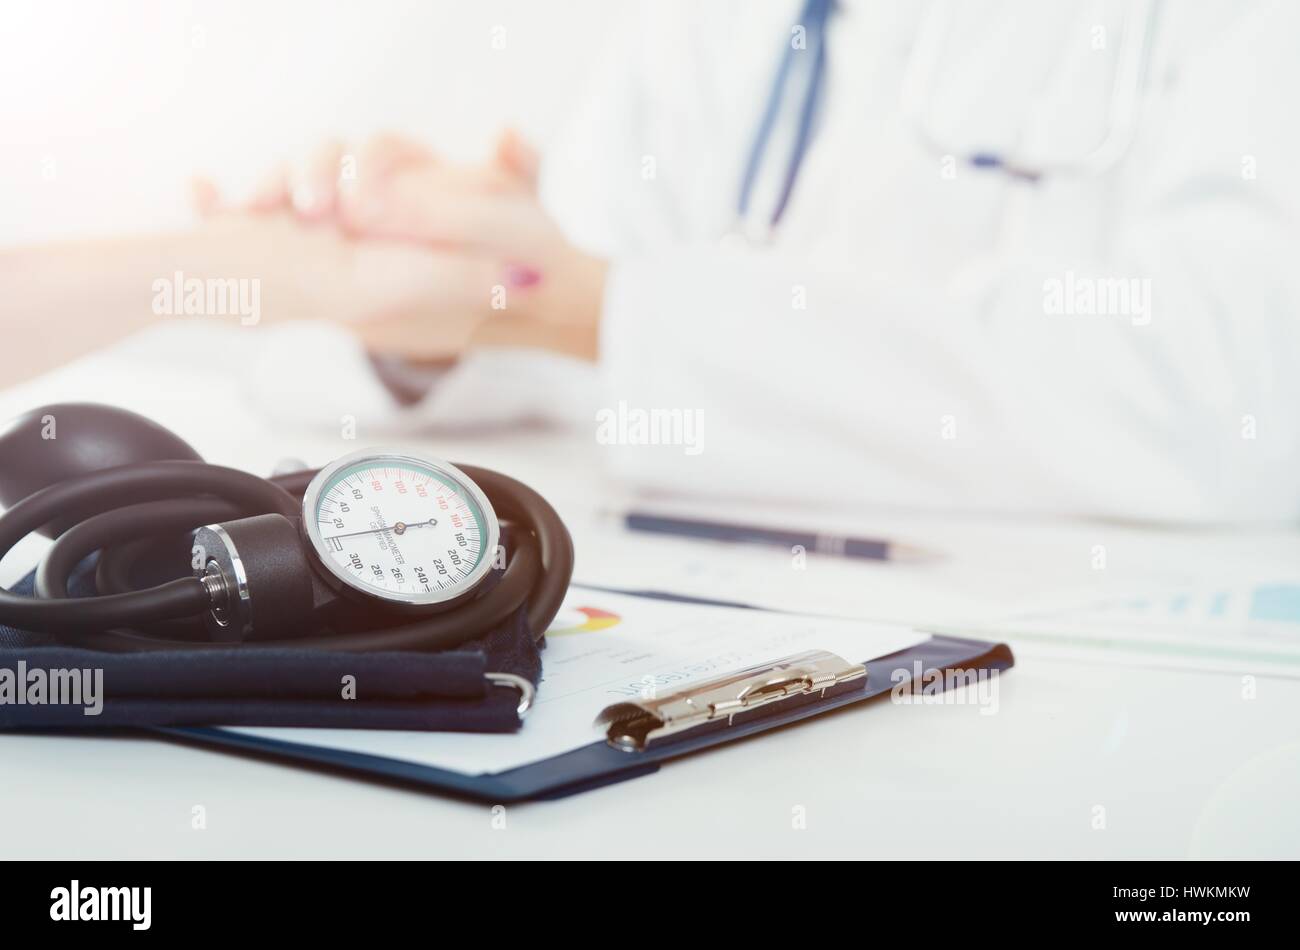 Il medico e il paziente consultazione medica. medico paziente health care office desk stetoscopio concetto medico Foto Stock